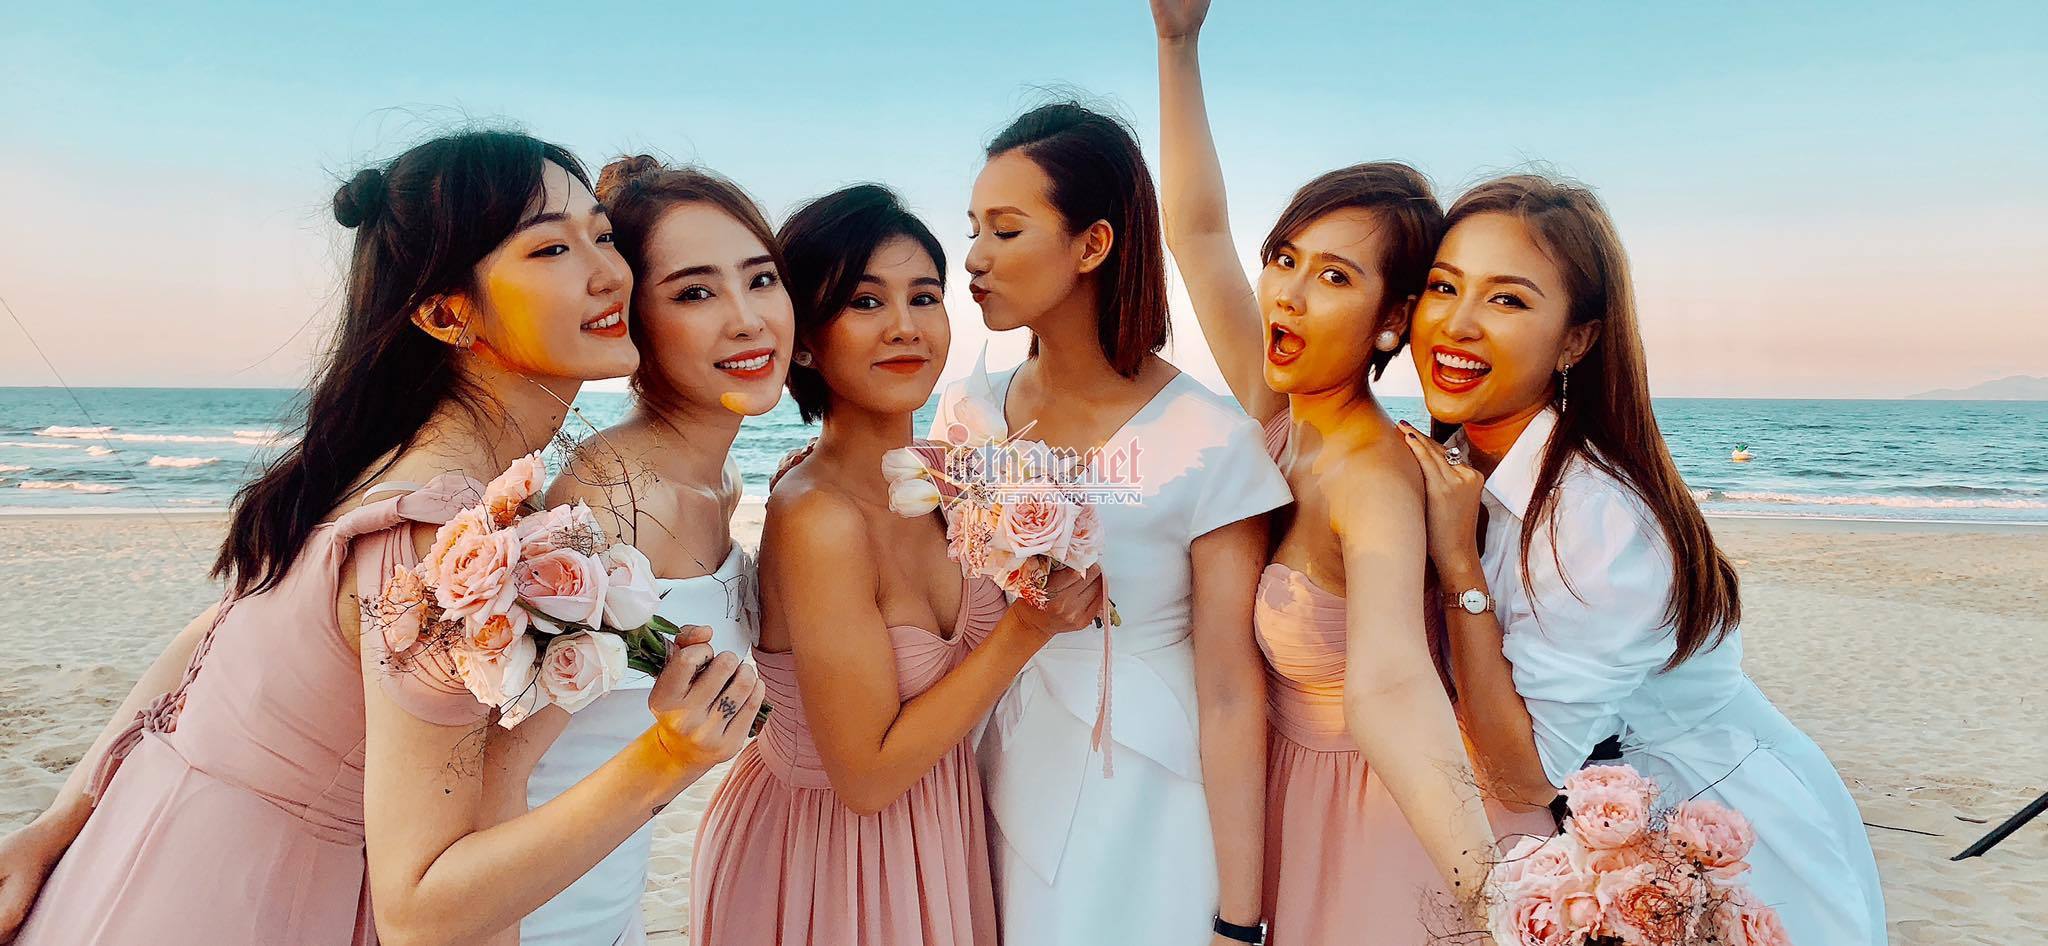 Phanh Lee chính thức lên tiếng: Chúng tôi cưới lần đầu!